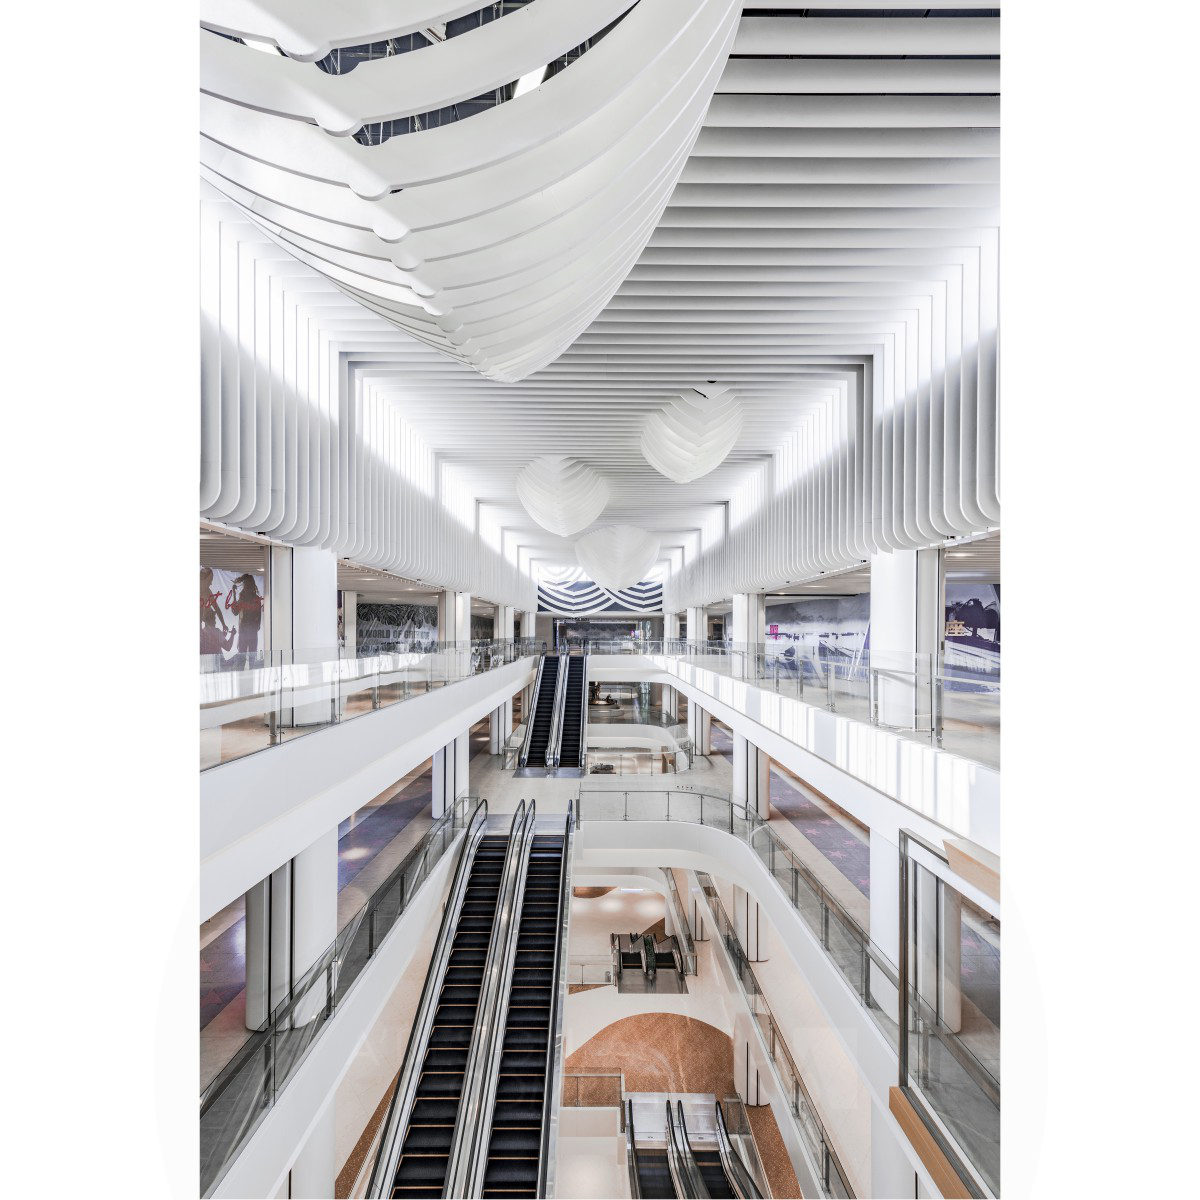 inzone shopping mall by Shen Junwei